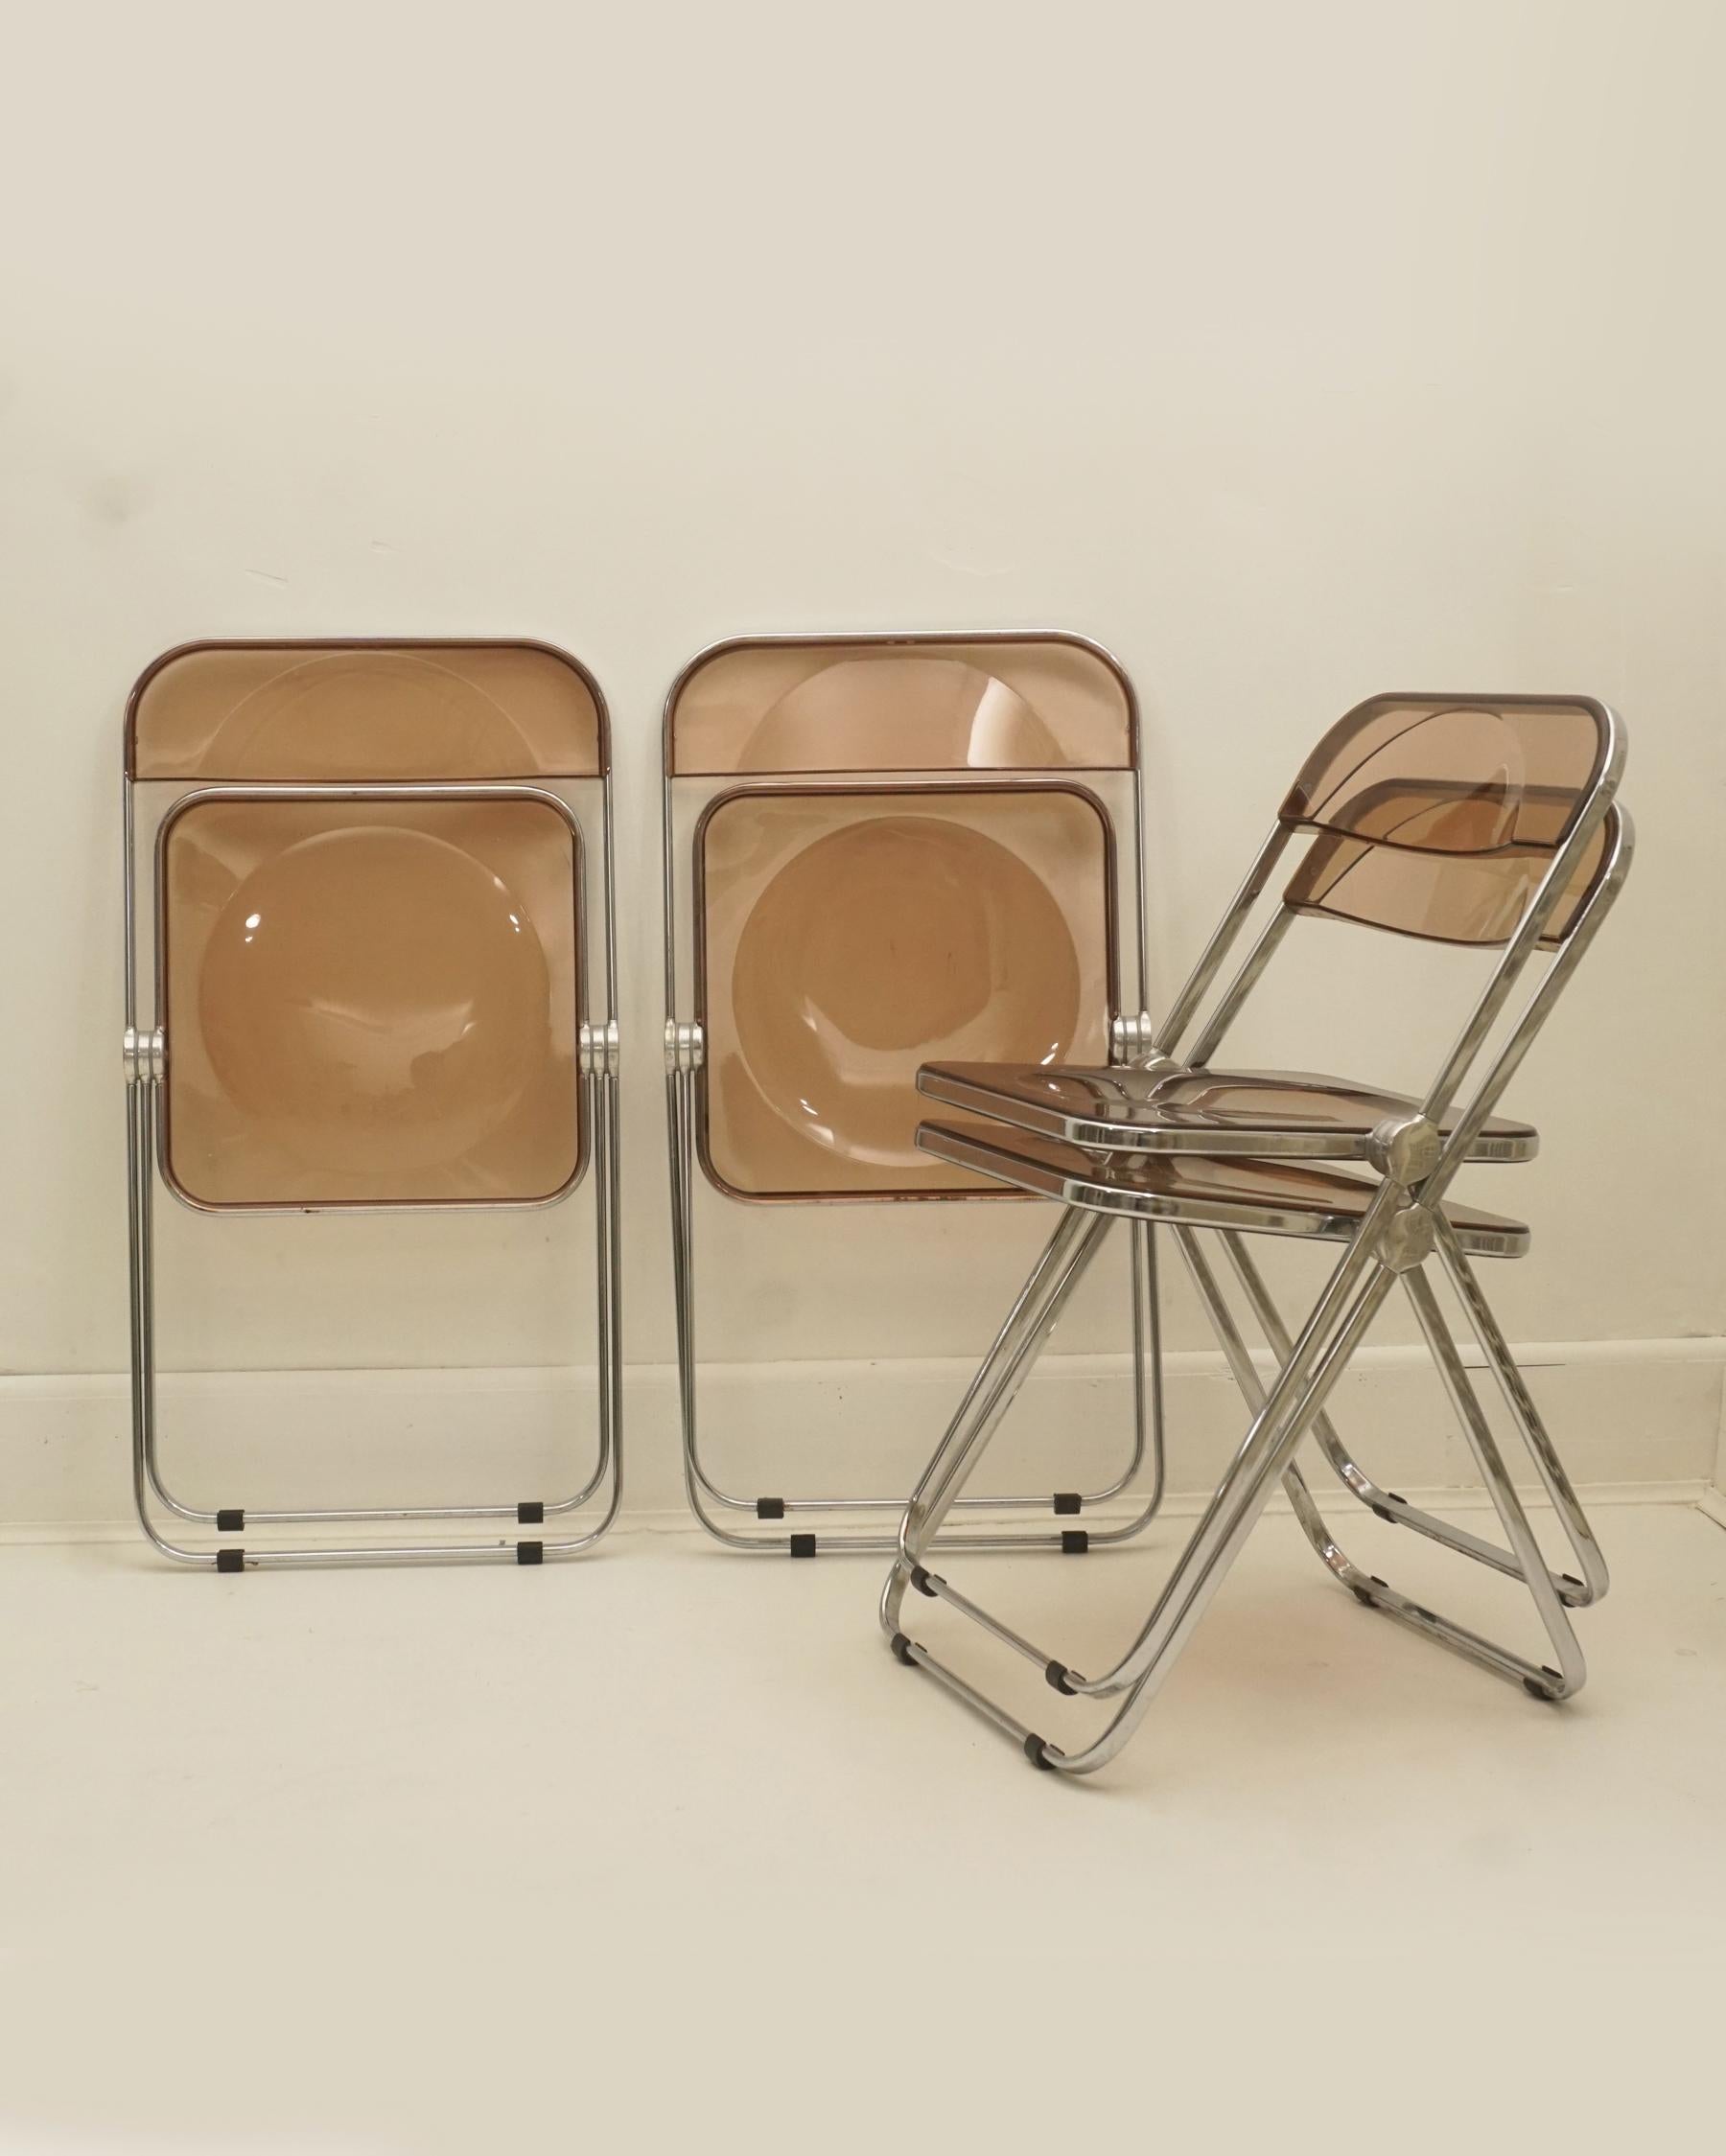 Chaises pliantes en lucite chromée et bronze fumé des années 1960 par Giancarlo Piretti pour Castelli. Fabriquées en Italie. Labellisé sur le dessous de chaque chaise. Très bon état avec quelques petites éraflures. Quatre sont disponibles et vendus